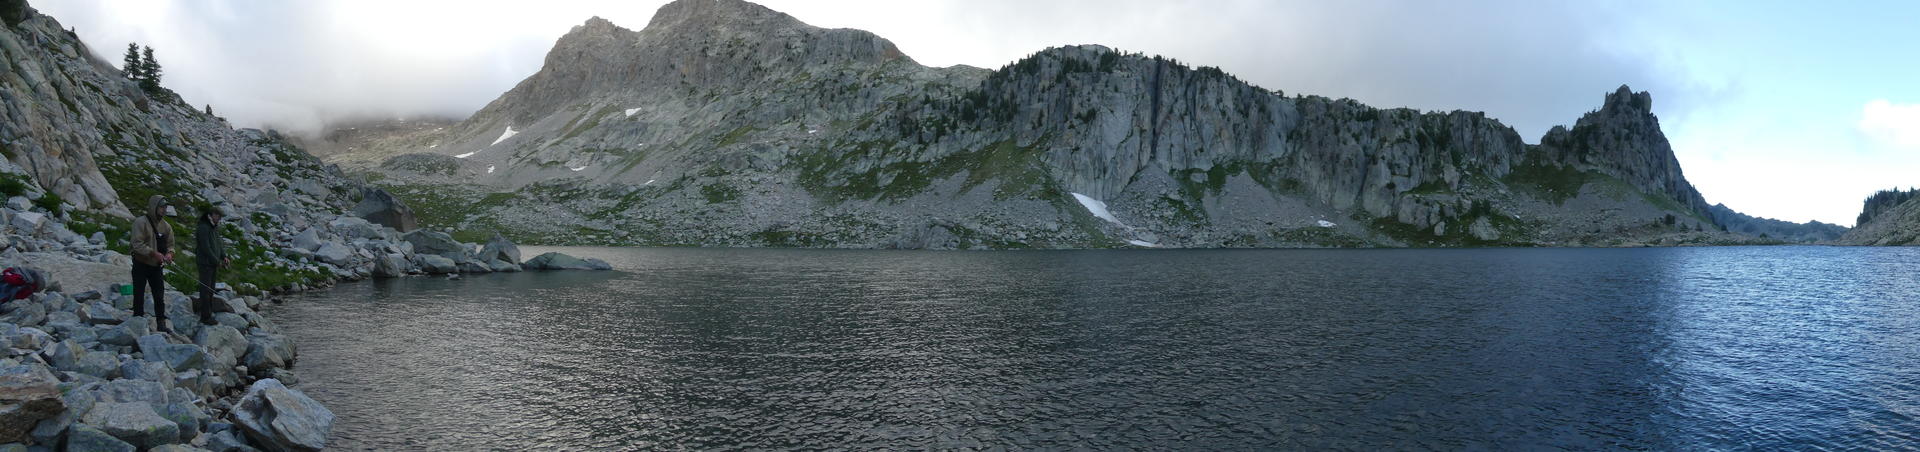 Lac altitude peche 06 alpes maritimes mercantour truite